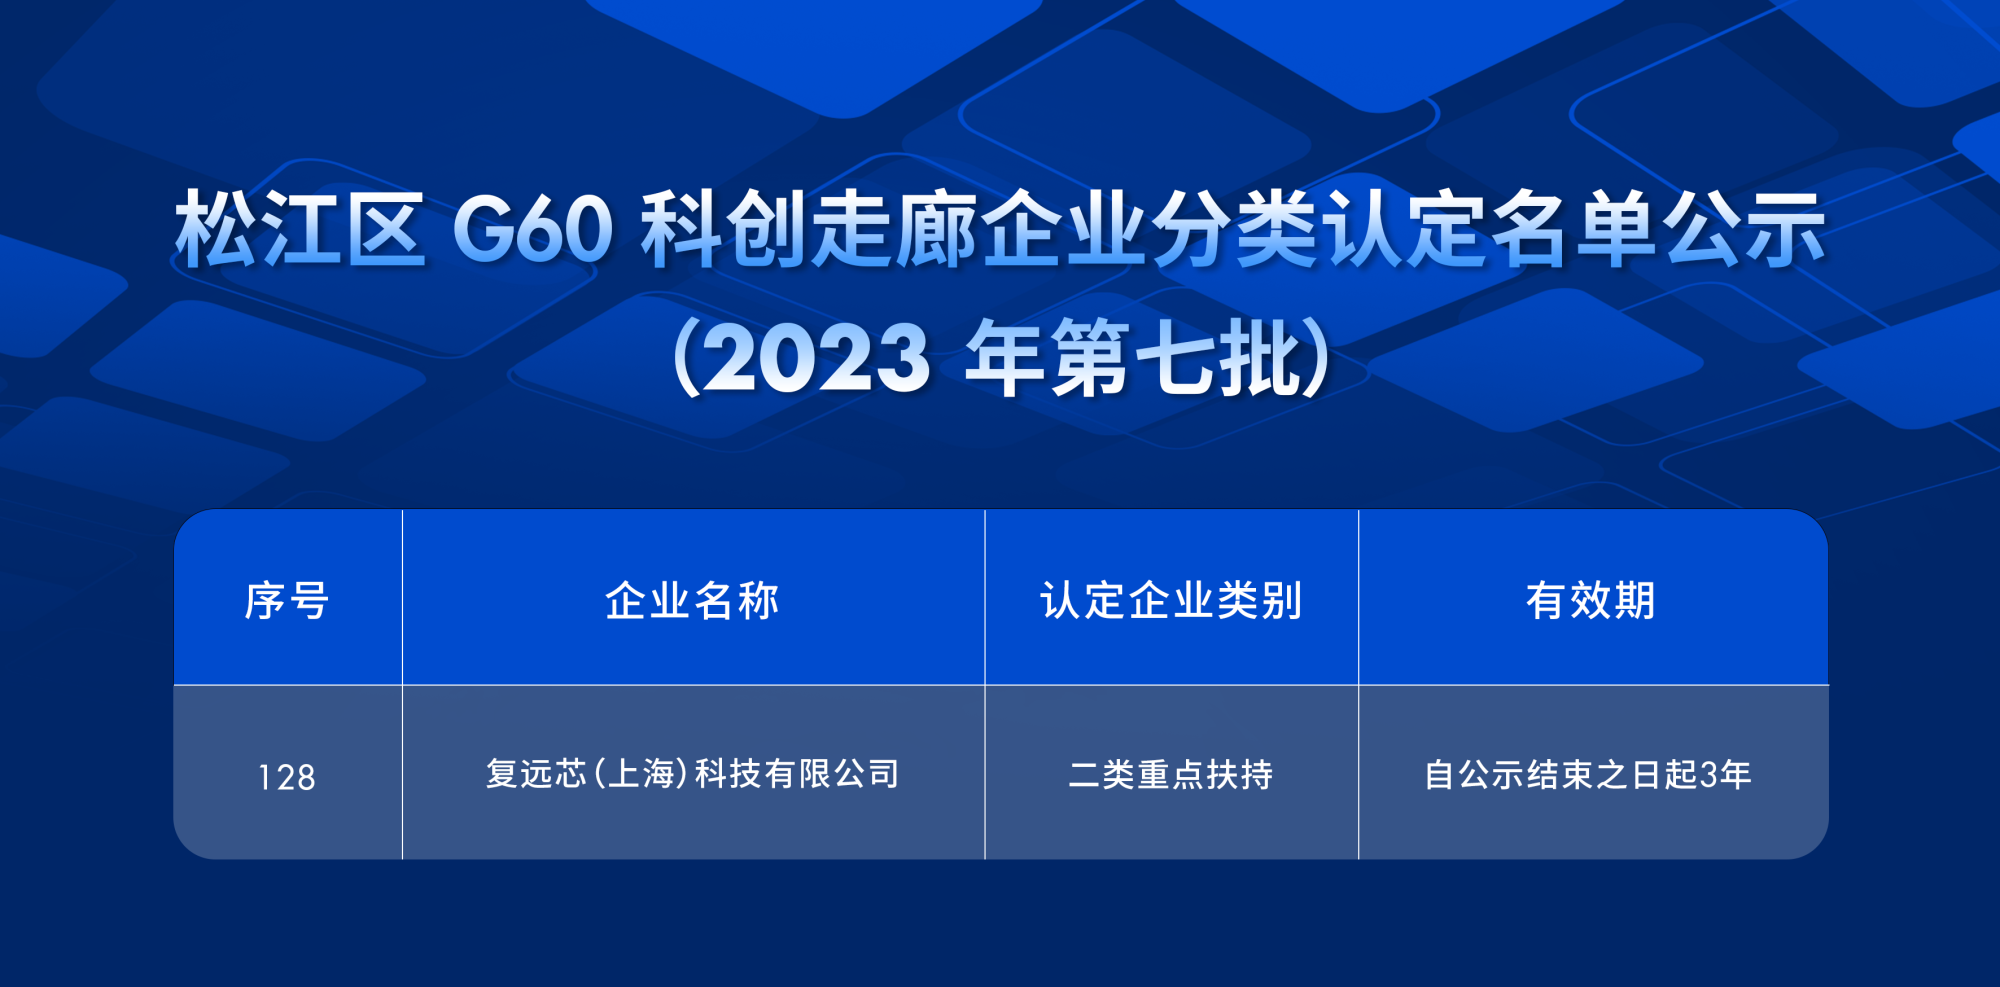 松江区 G60 科创走廊企业分类认定名单公示.png